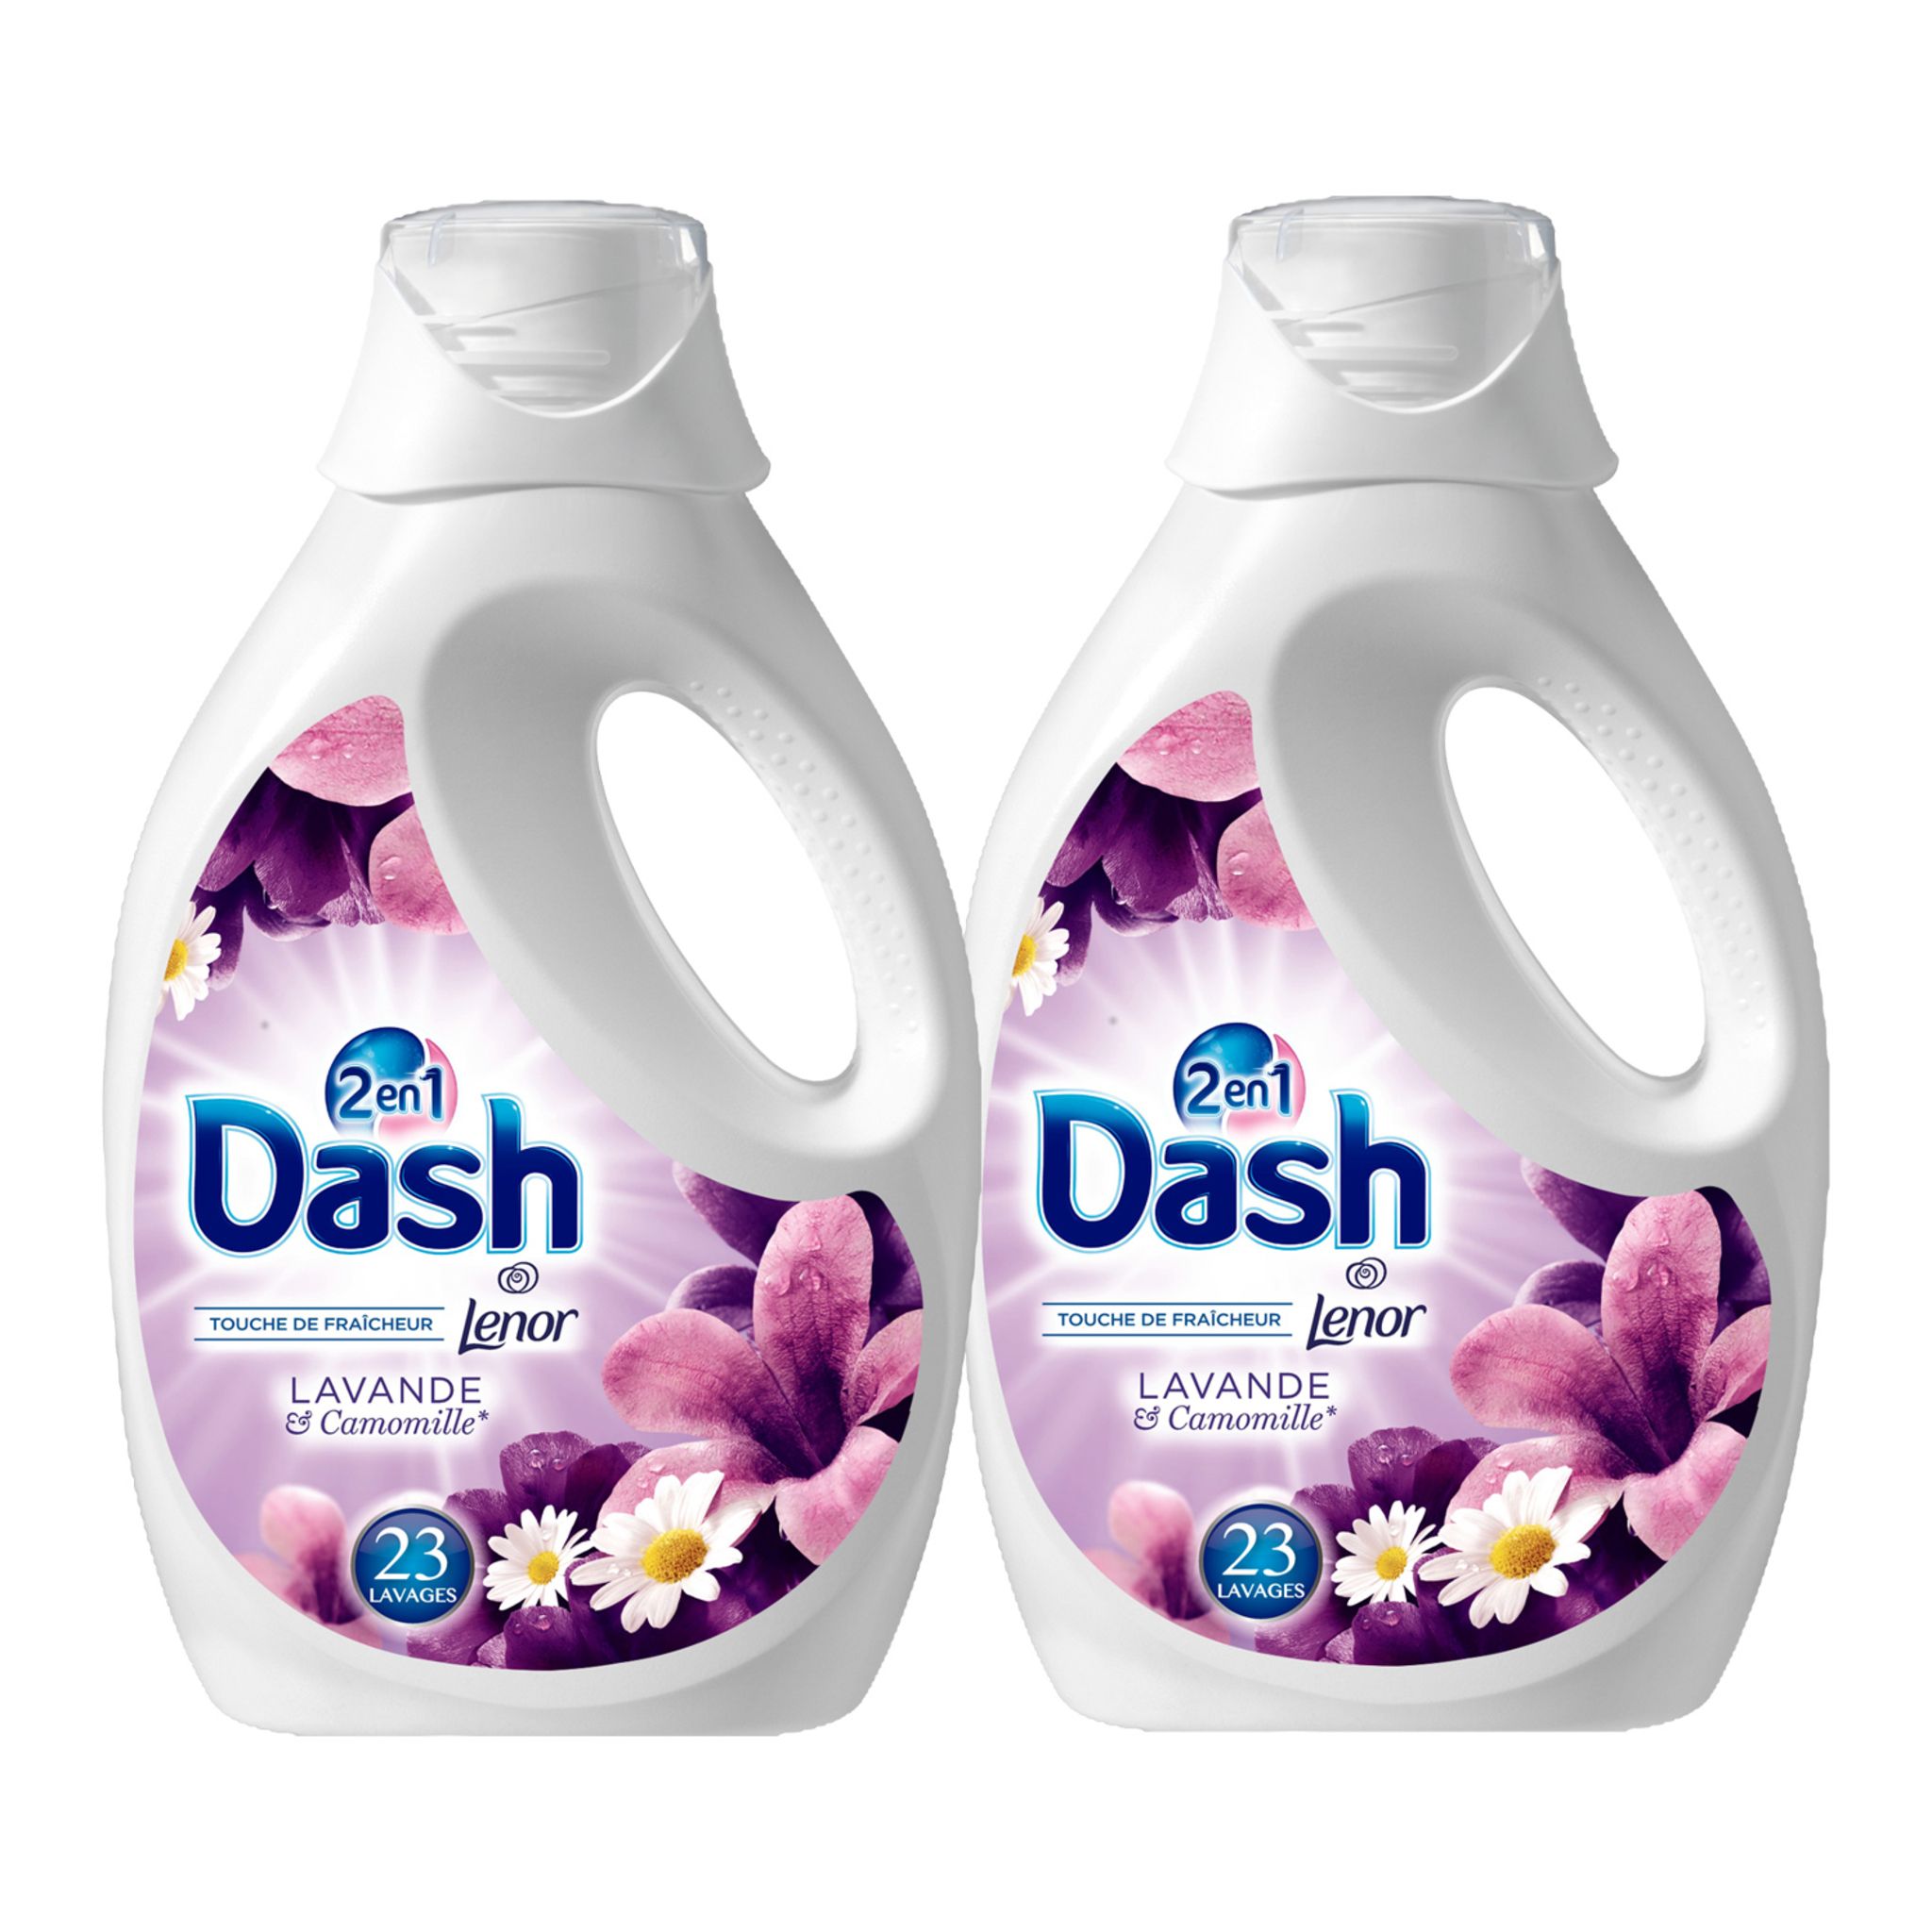 DASH Dash lessive diluée lavande lavage x46 -2x1,495l pas cher 